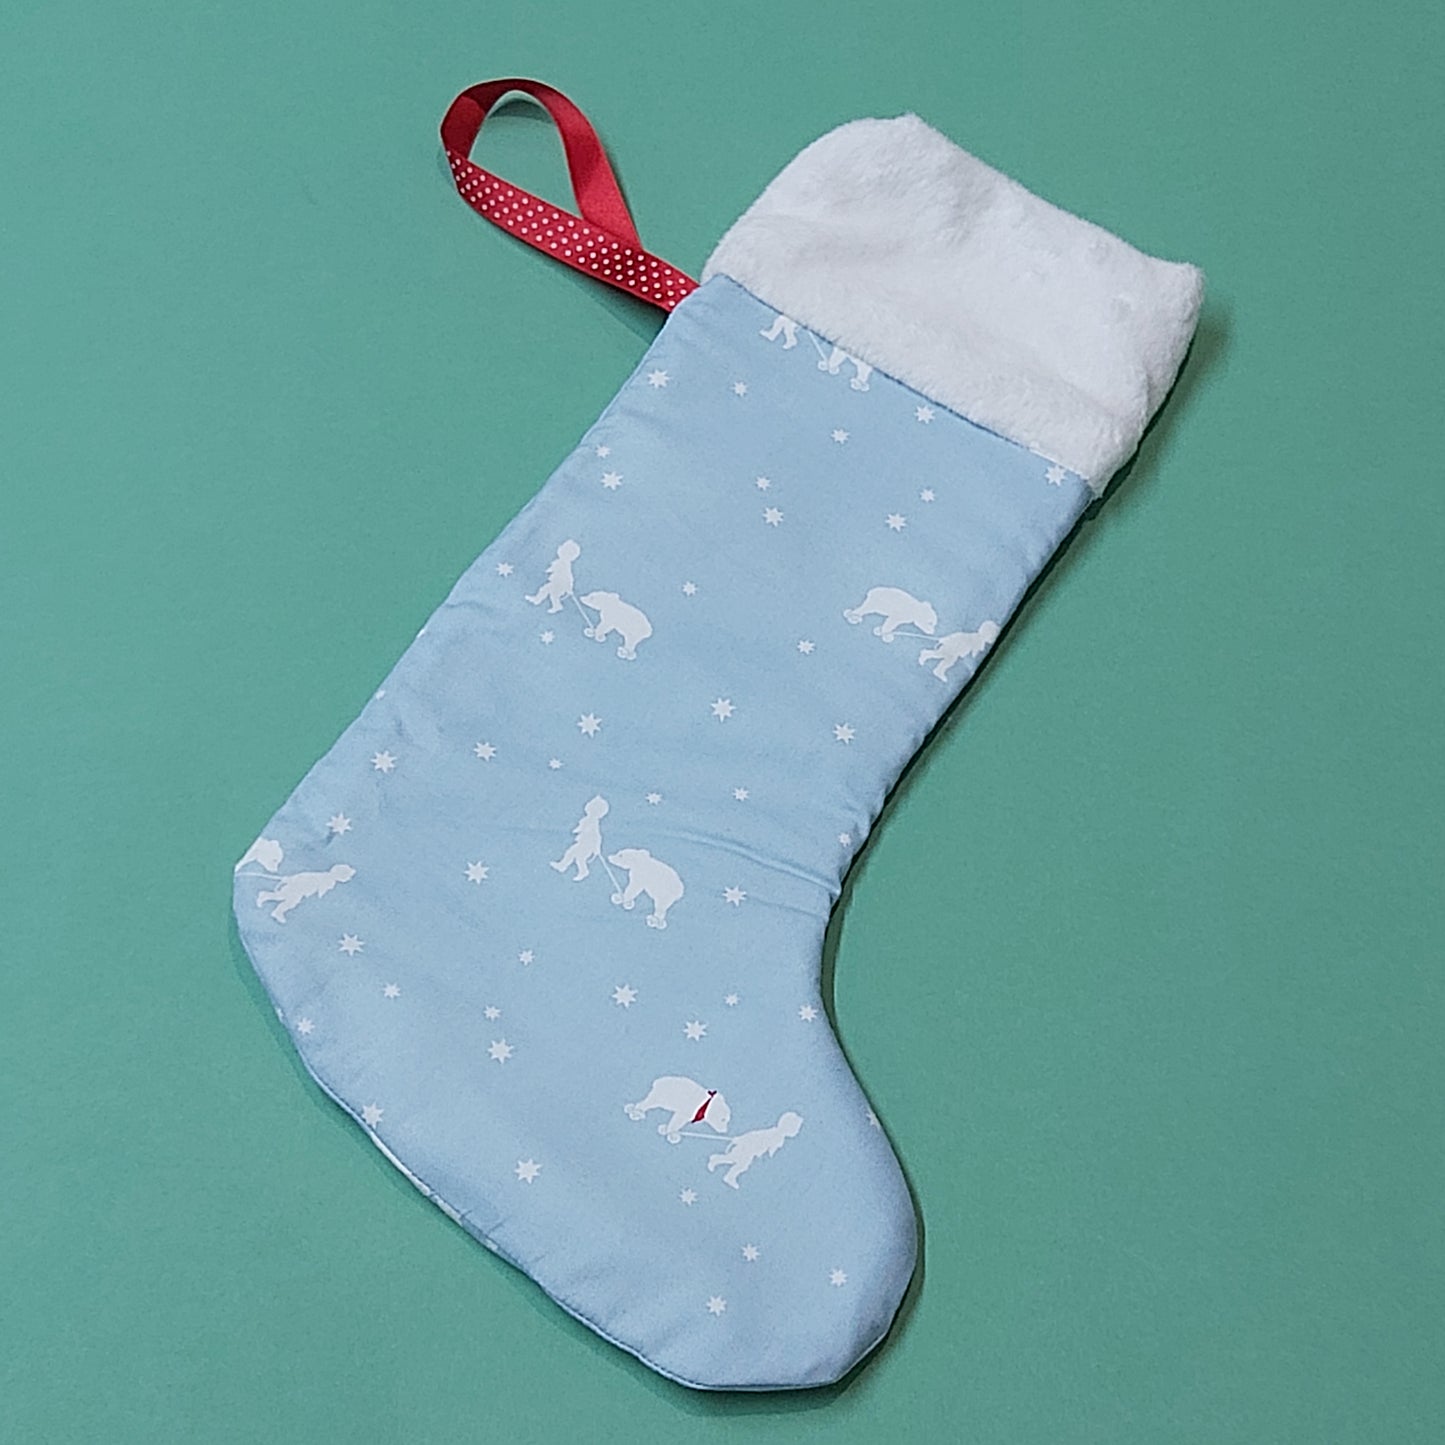 SAMPLE - Christmas Stocking